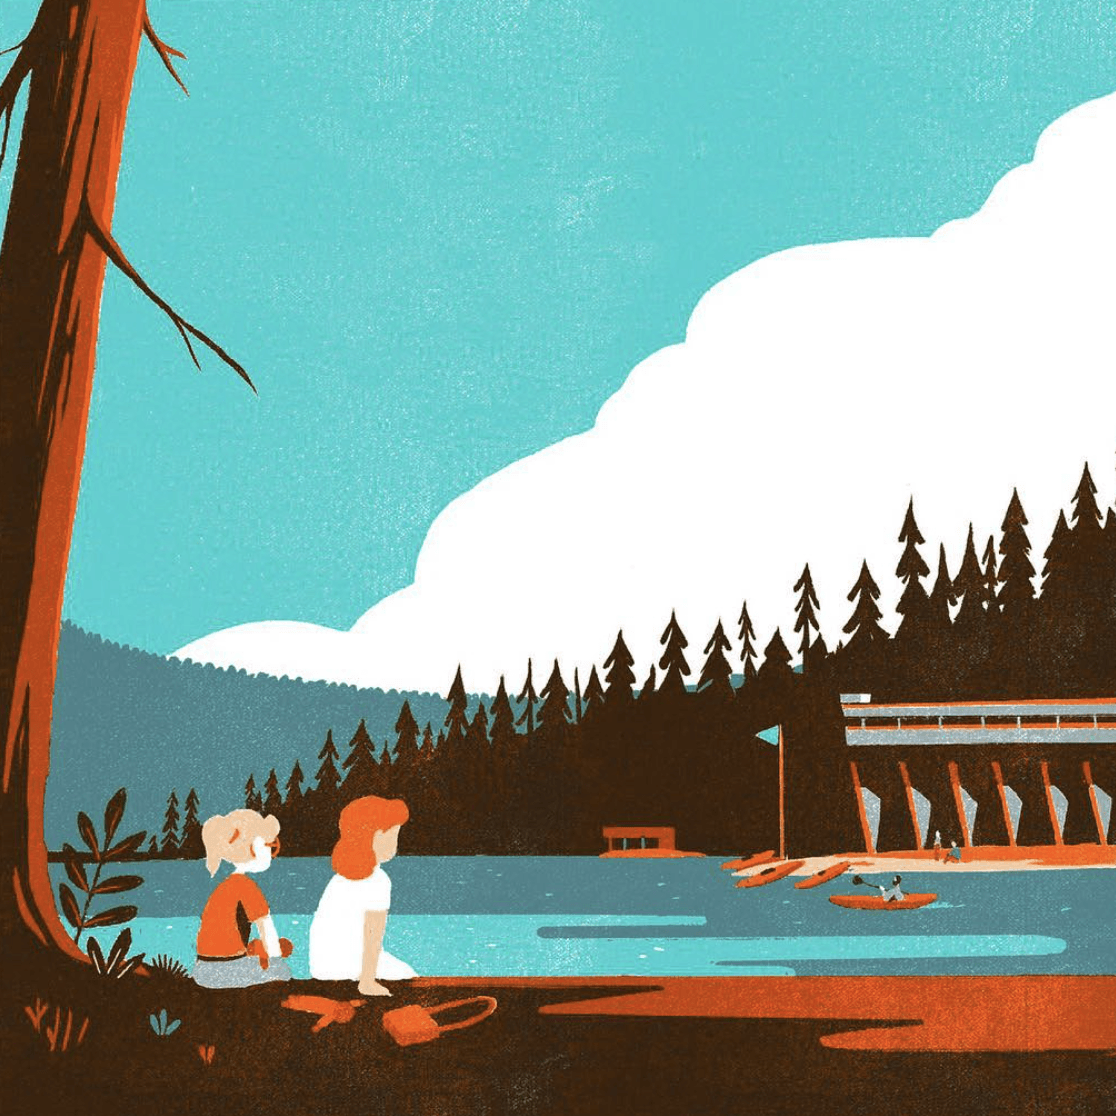 Pêche près d'un étang - illustration d'un paysage réalisée par Tom Haugomat